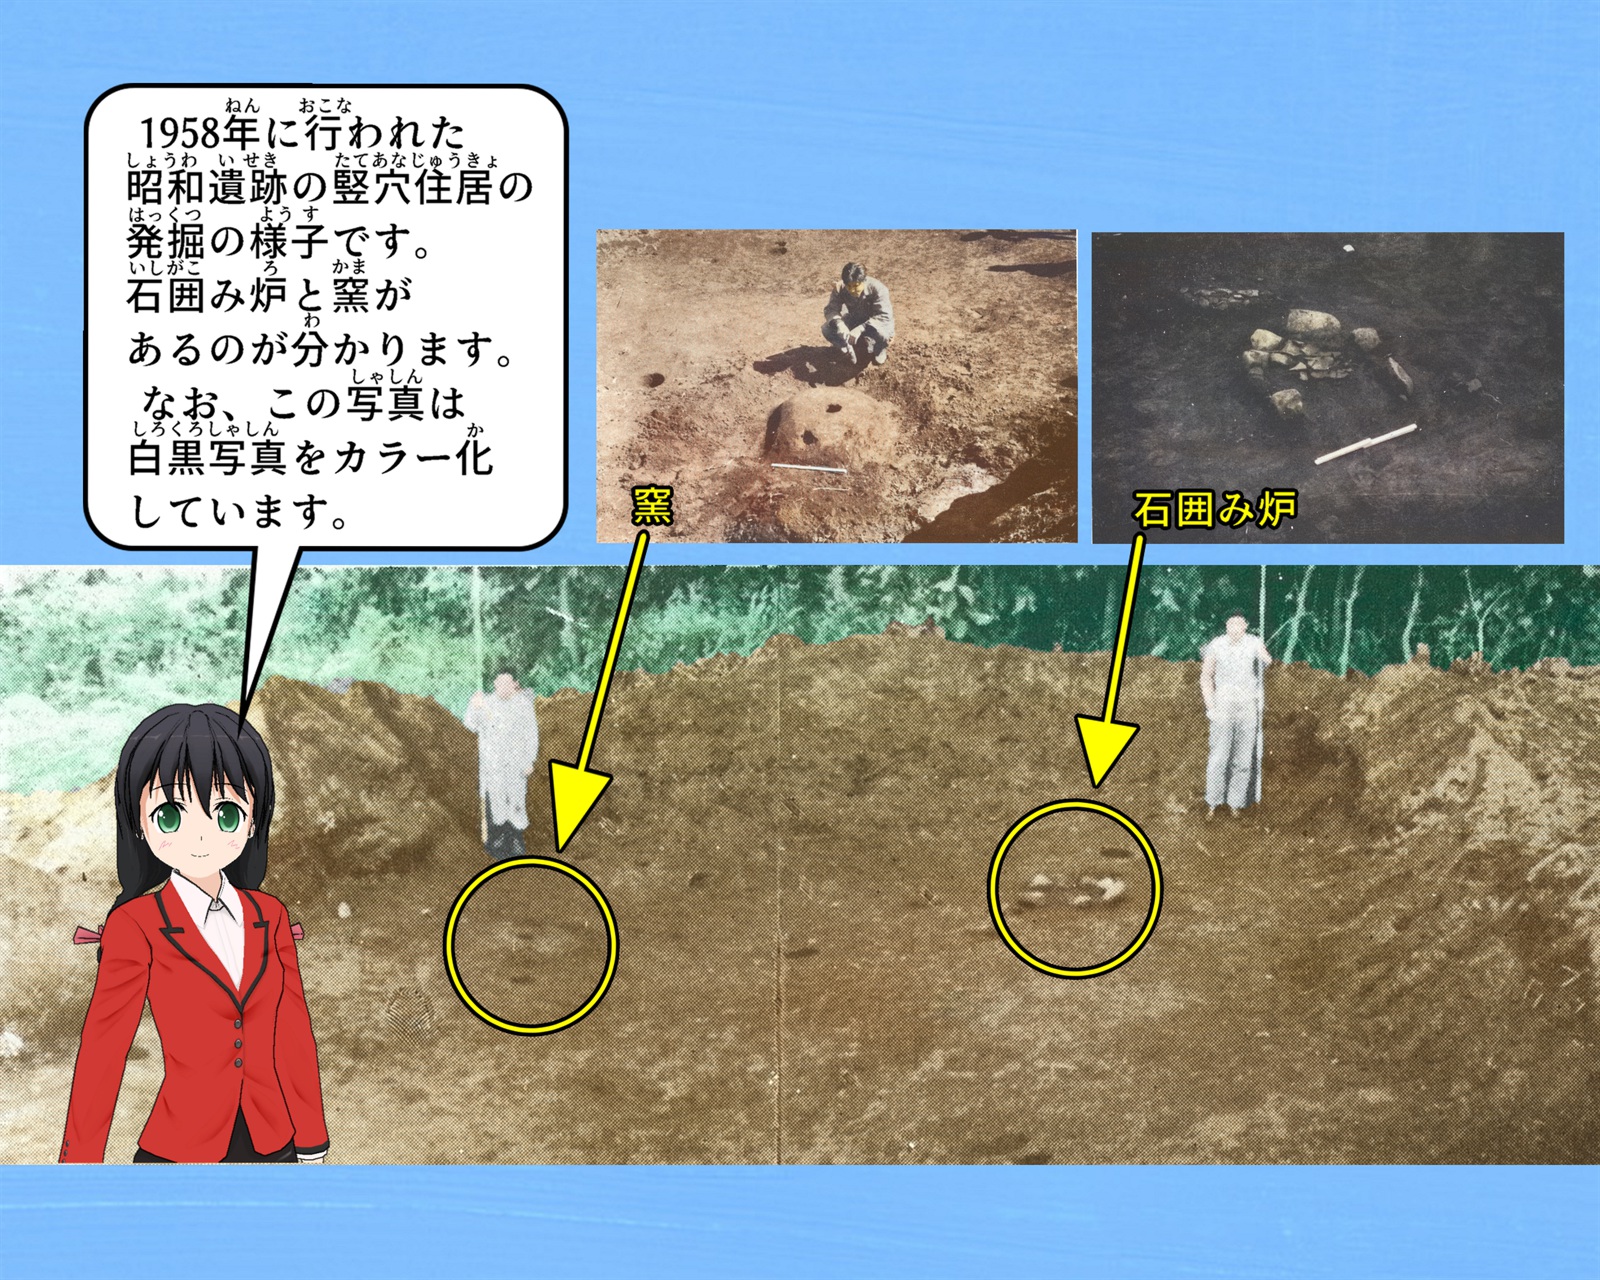 昭和遺跡の竪穴住居の発掘の様子の写真について説明をしているイラスト